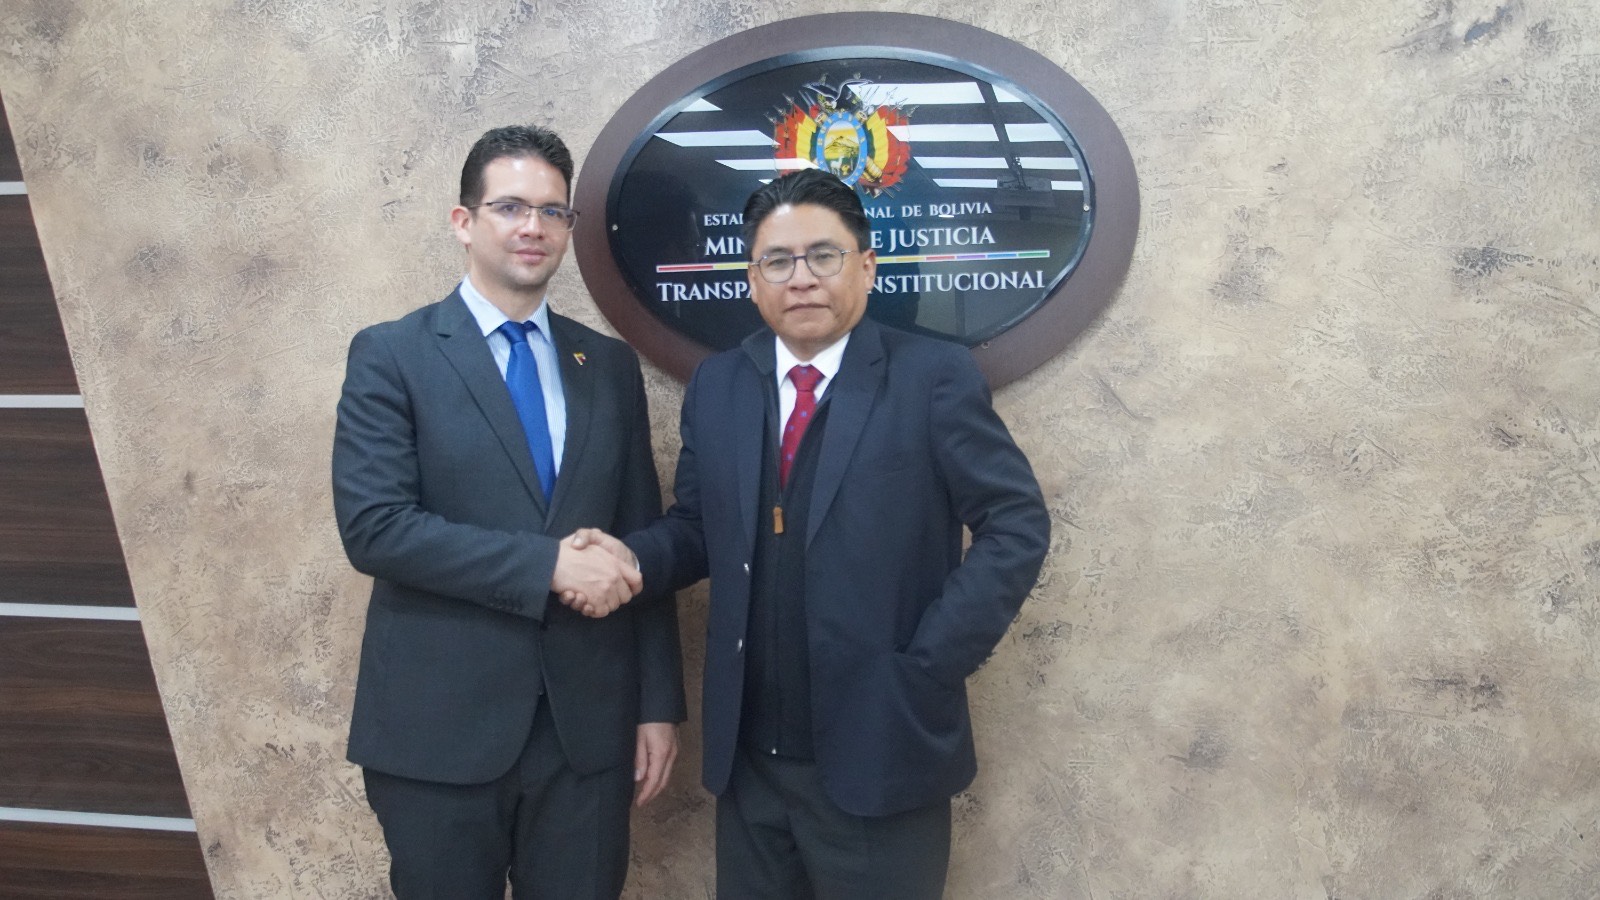 Venezuela y Bolivia fortalecen relaciones en materia justicia y transparencia institucional